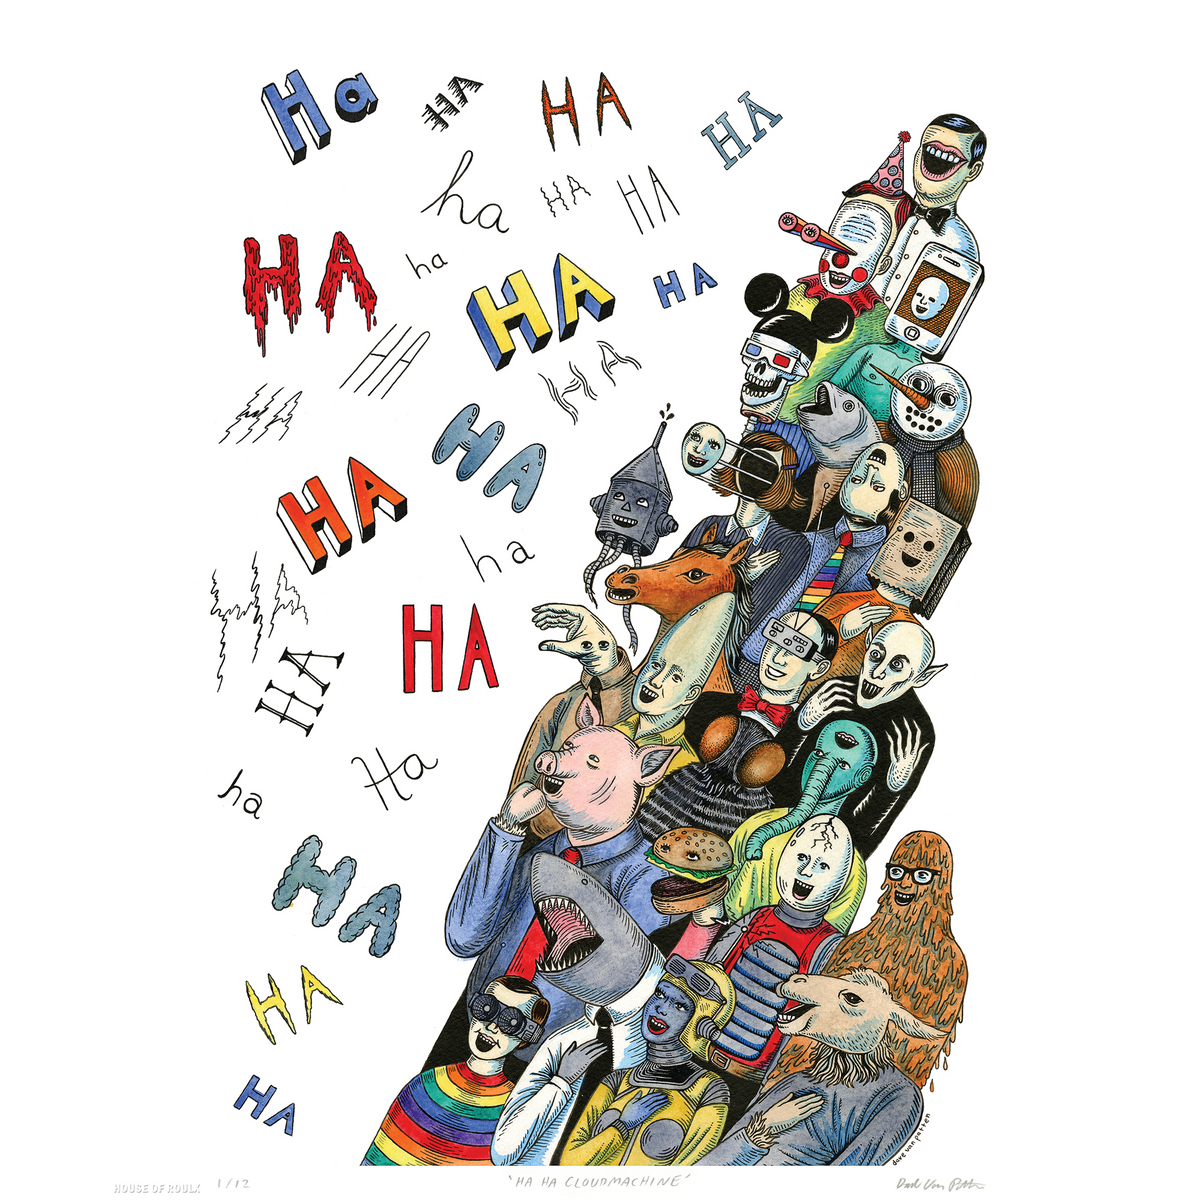 Dave Van Patten &quot;Ha Ha Cloudmachine&quot; - Archival Print, Limited Edition of 12 - 14 x 17&quot;